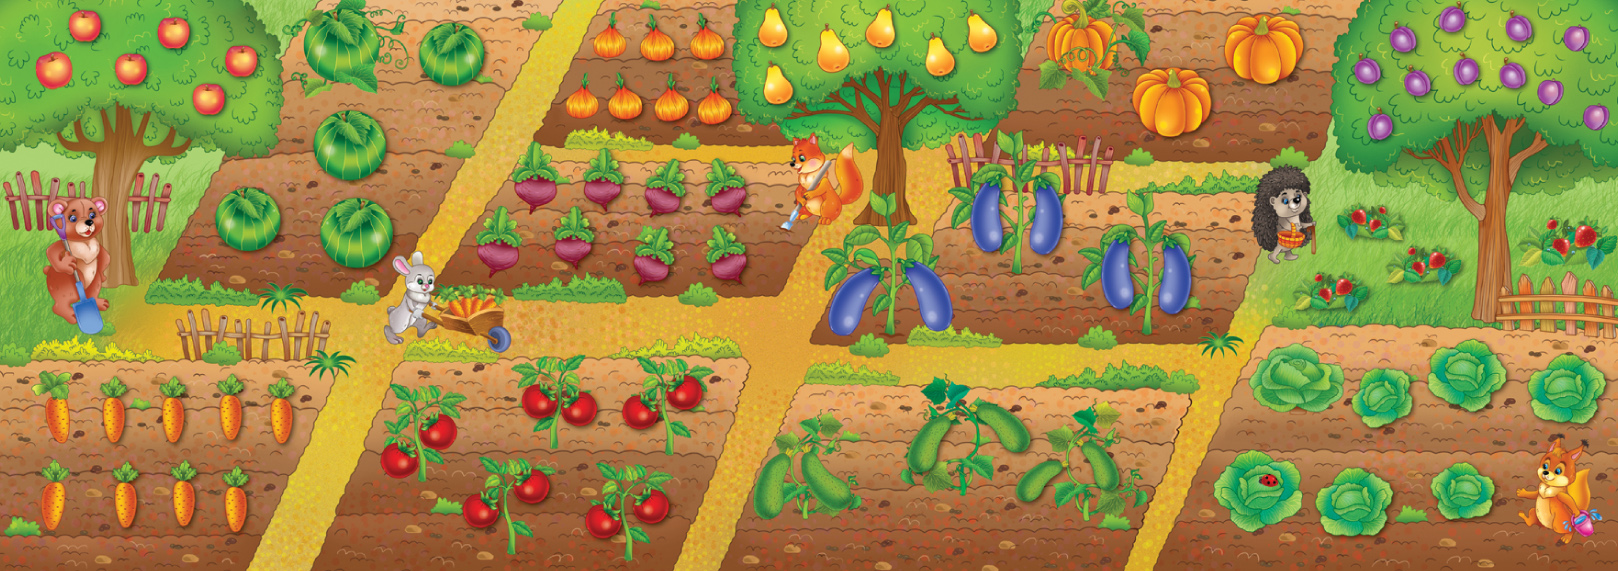 Панорамка-игра, Овощи и фрукты  